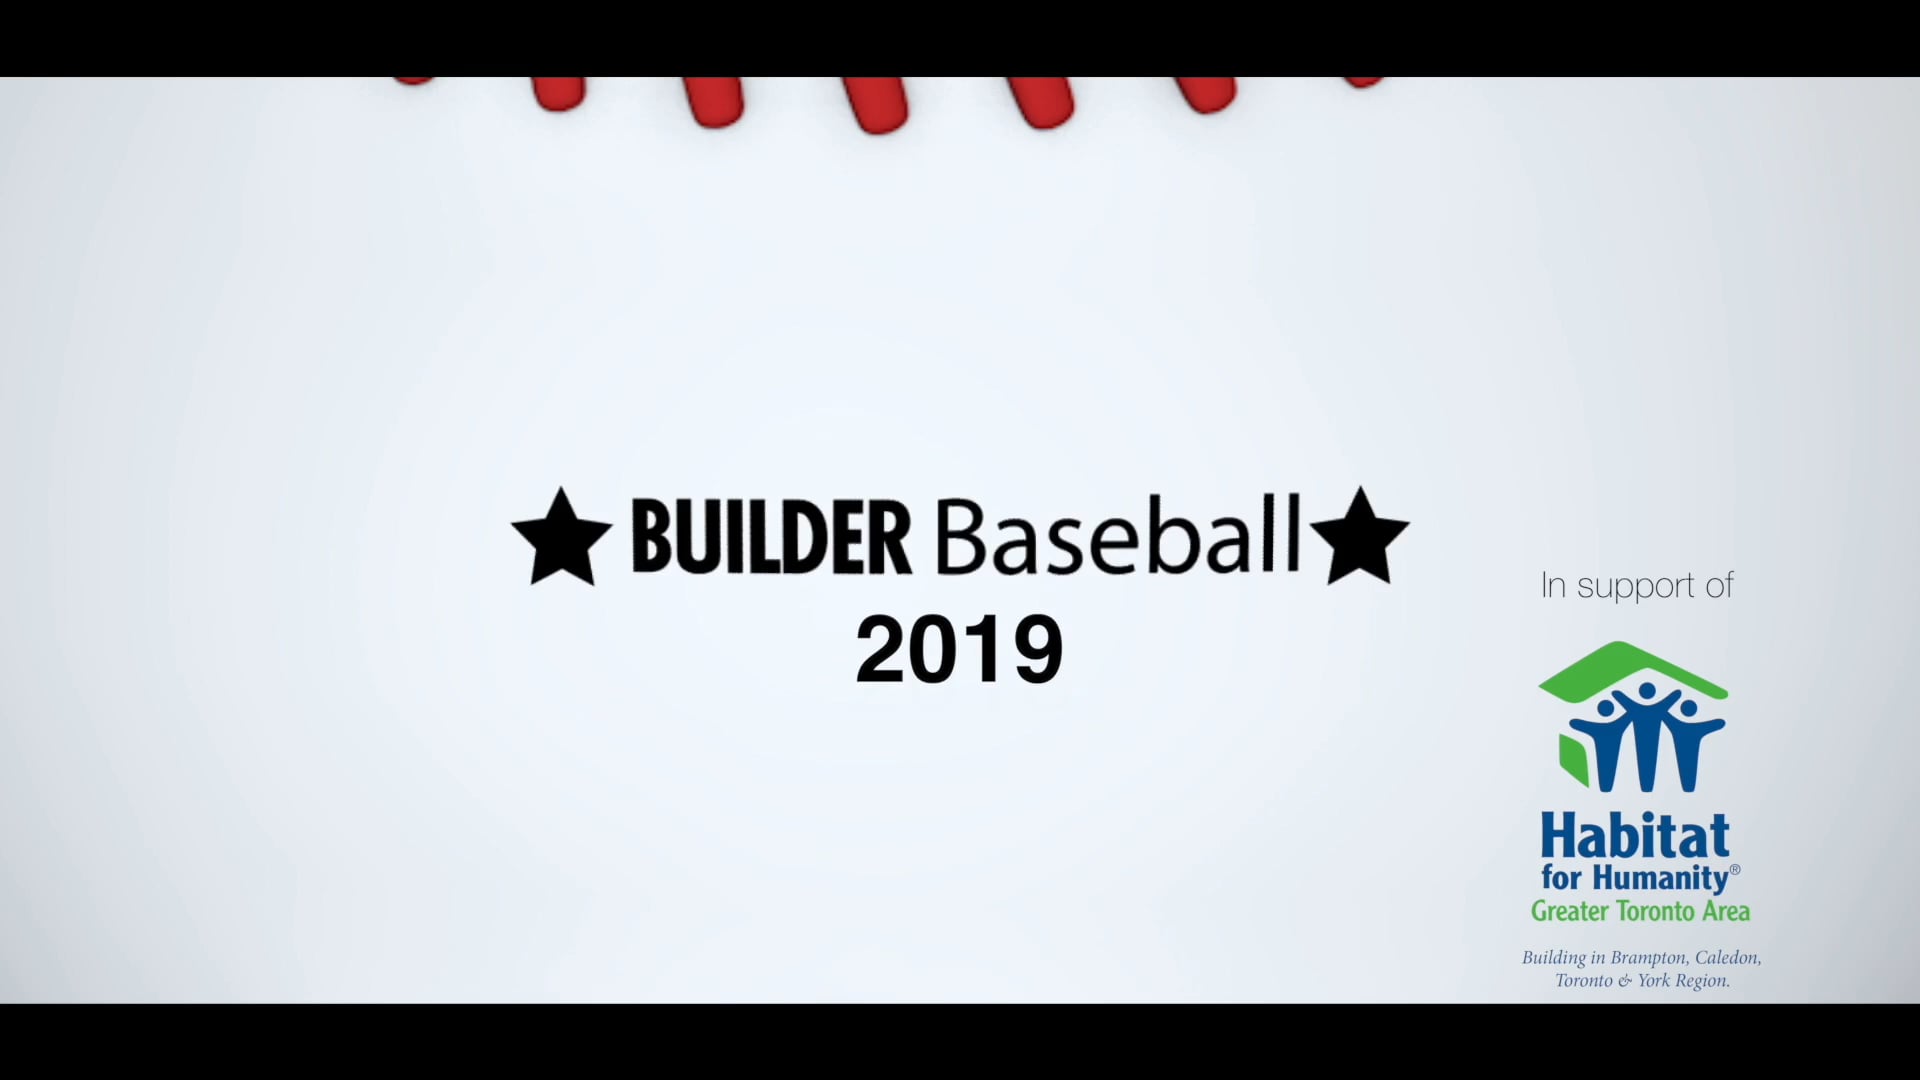 BUILDER BASEBALL 2019